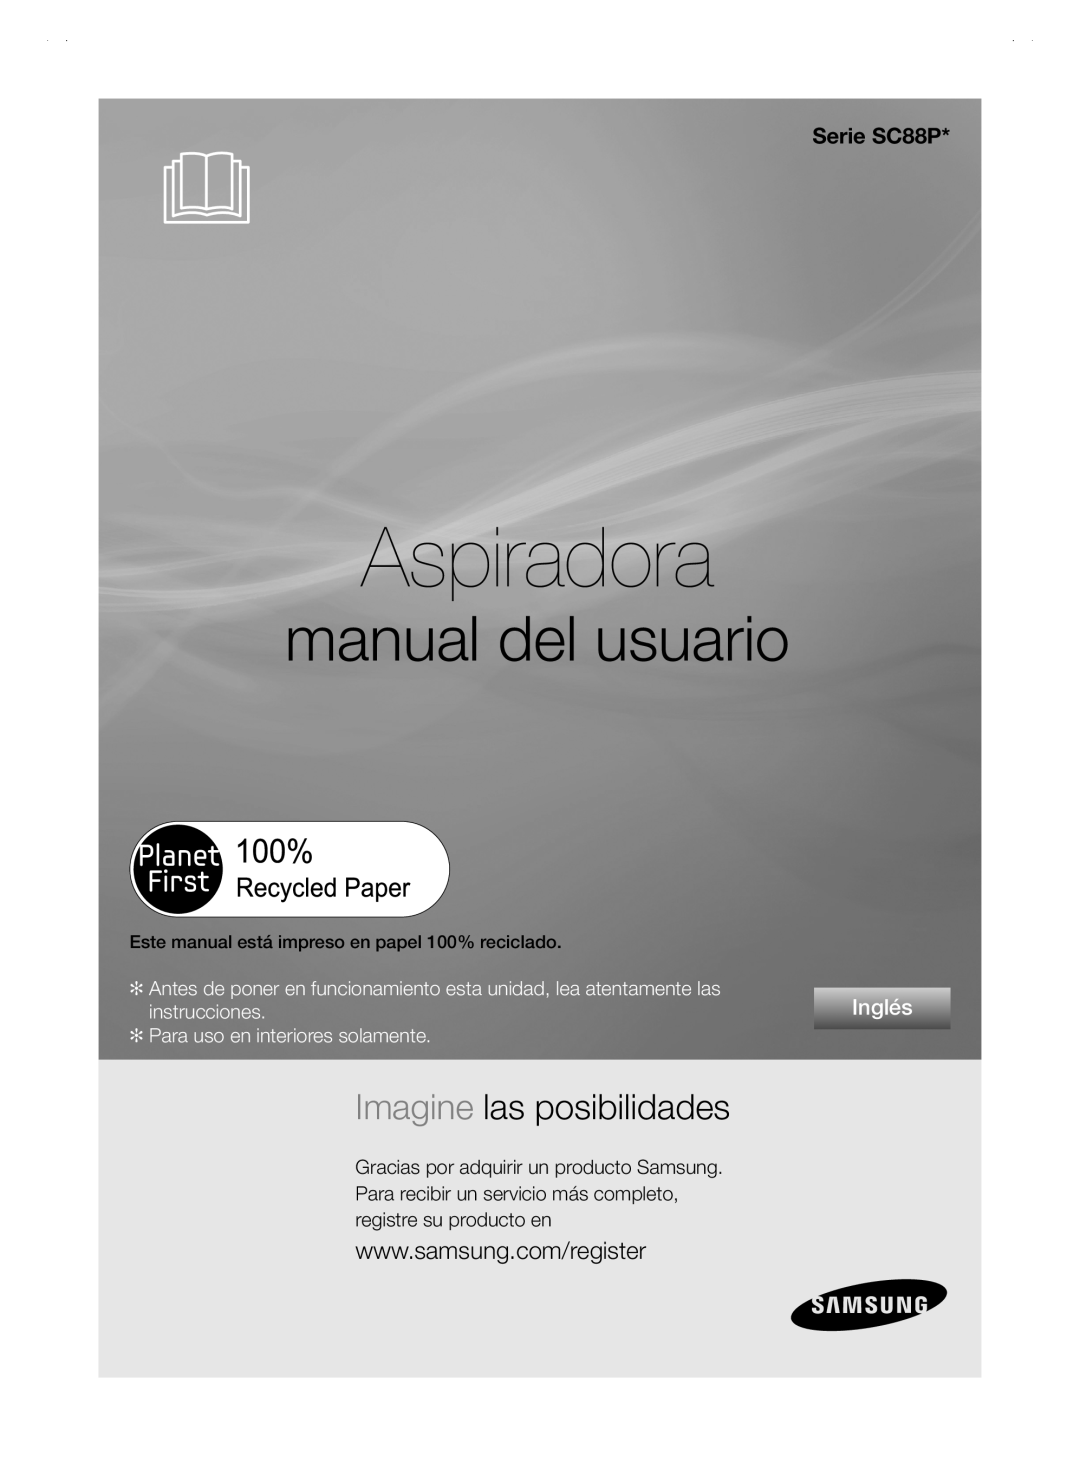 Samsung user manual Aspiradora, manual del usuario, Imagine las posibilidades, Serie SC88P, Inglés, instrucciones 